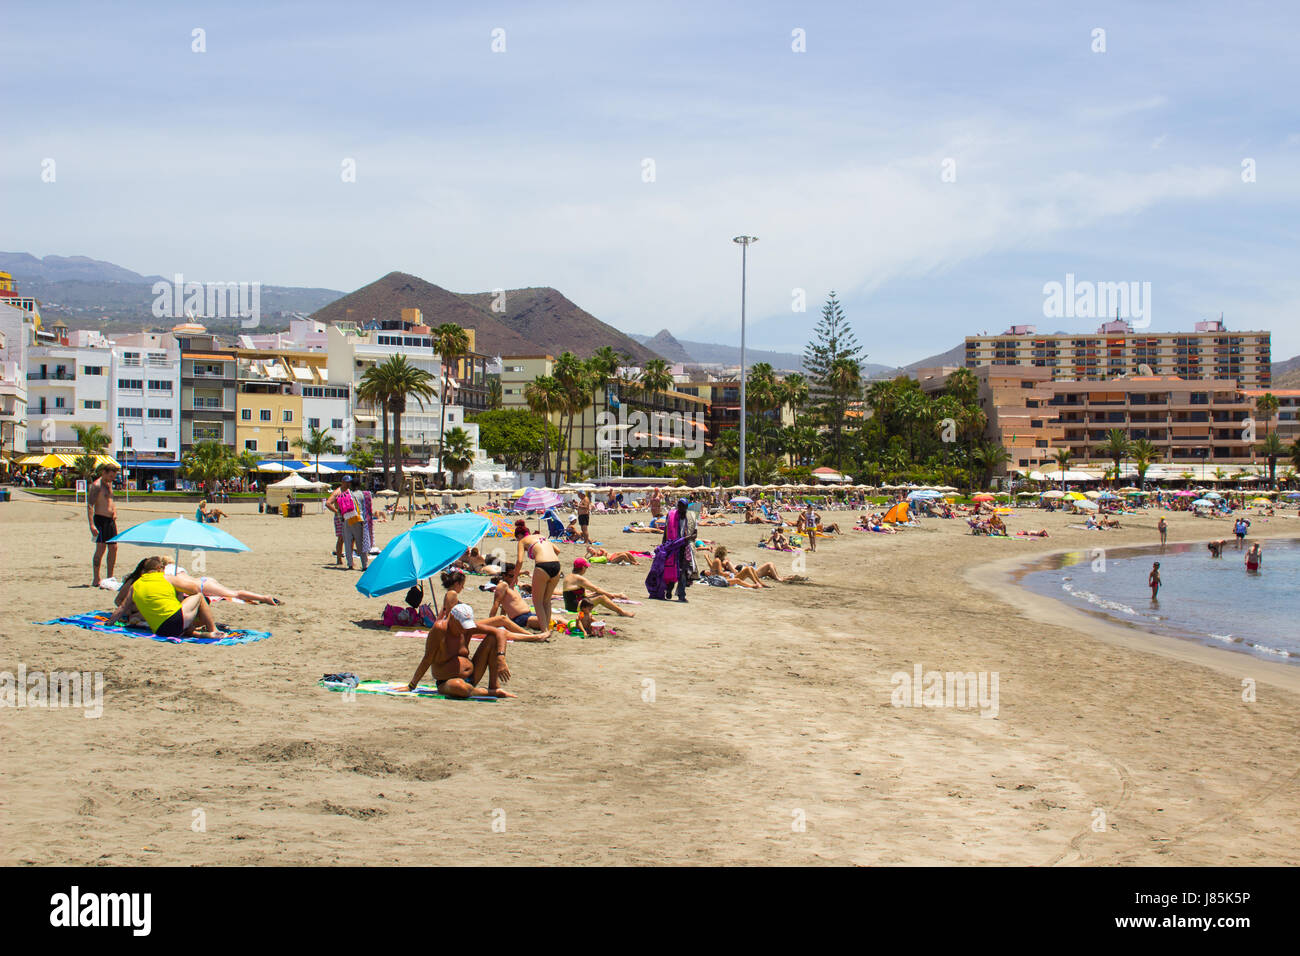 Il Sandy Bay a Los Cristianos a Tenerife con i vacanzieri bagni di sole con il terminal dei traghetti e delle navi in background Foto Stock